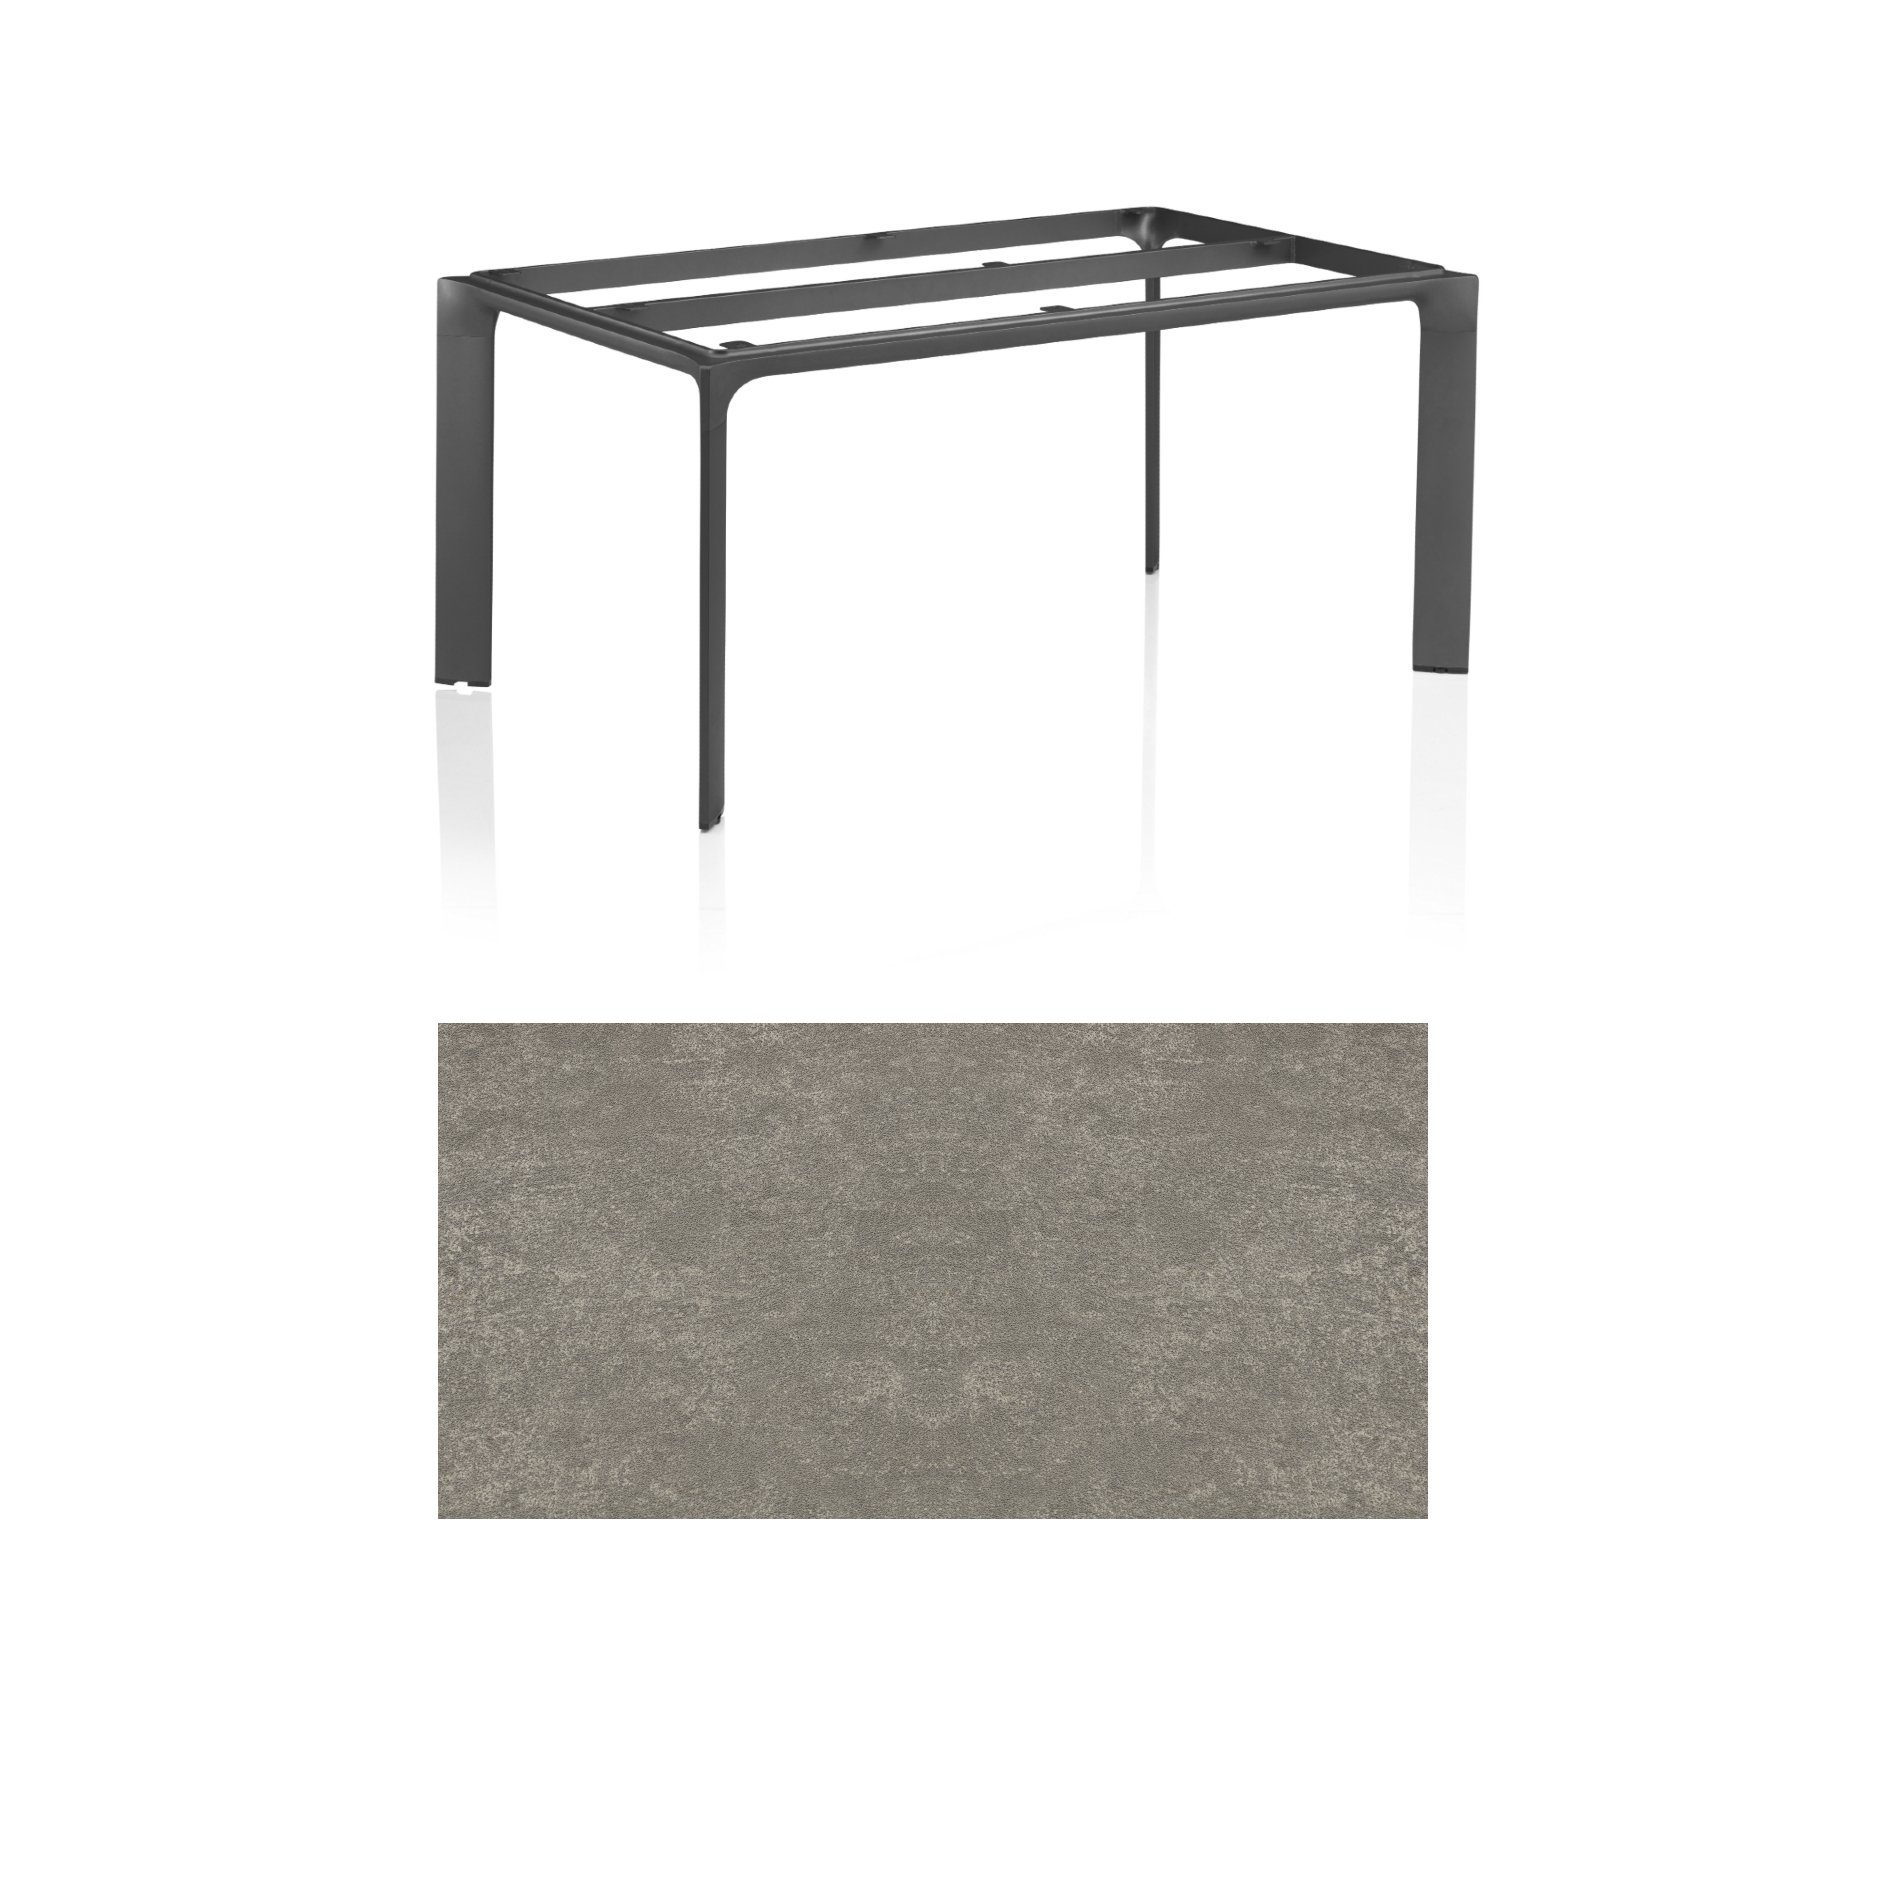 Kettler "Diamond" Tischsystem Gartentisch, Tischgestell 160x95cm, Alu anthrazit, Tischplatte Keramik grau-taupe